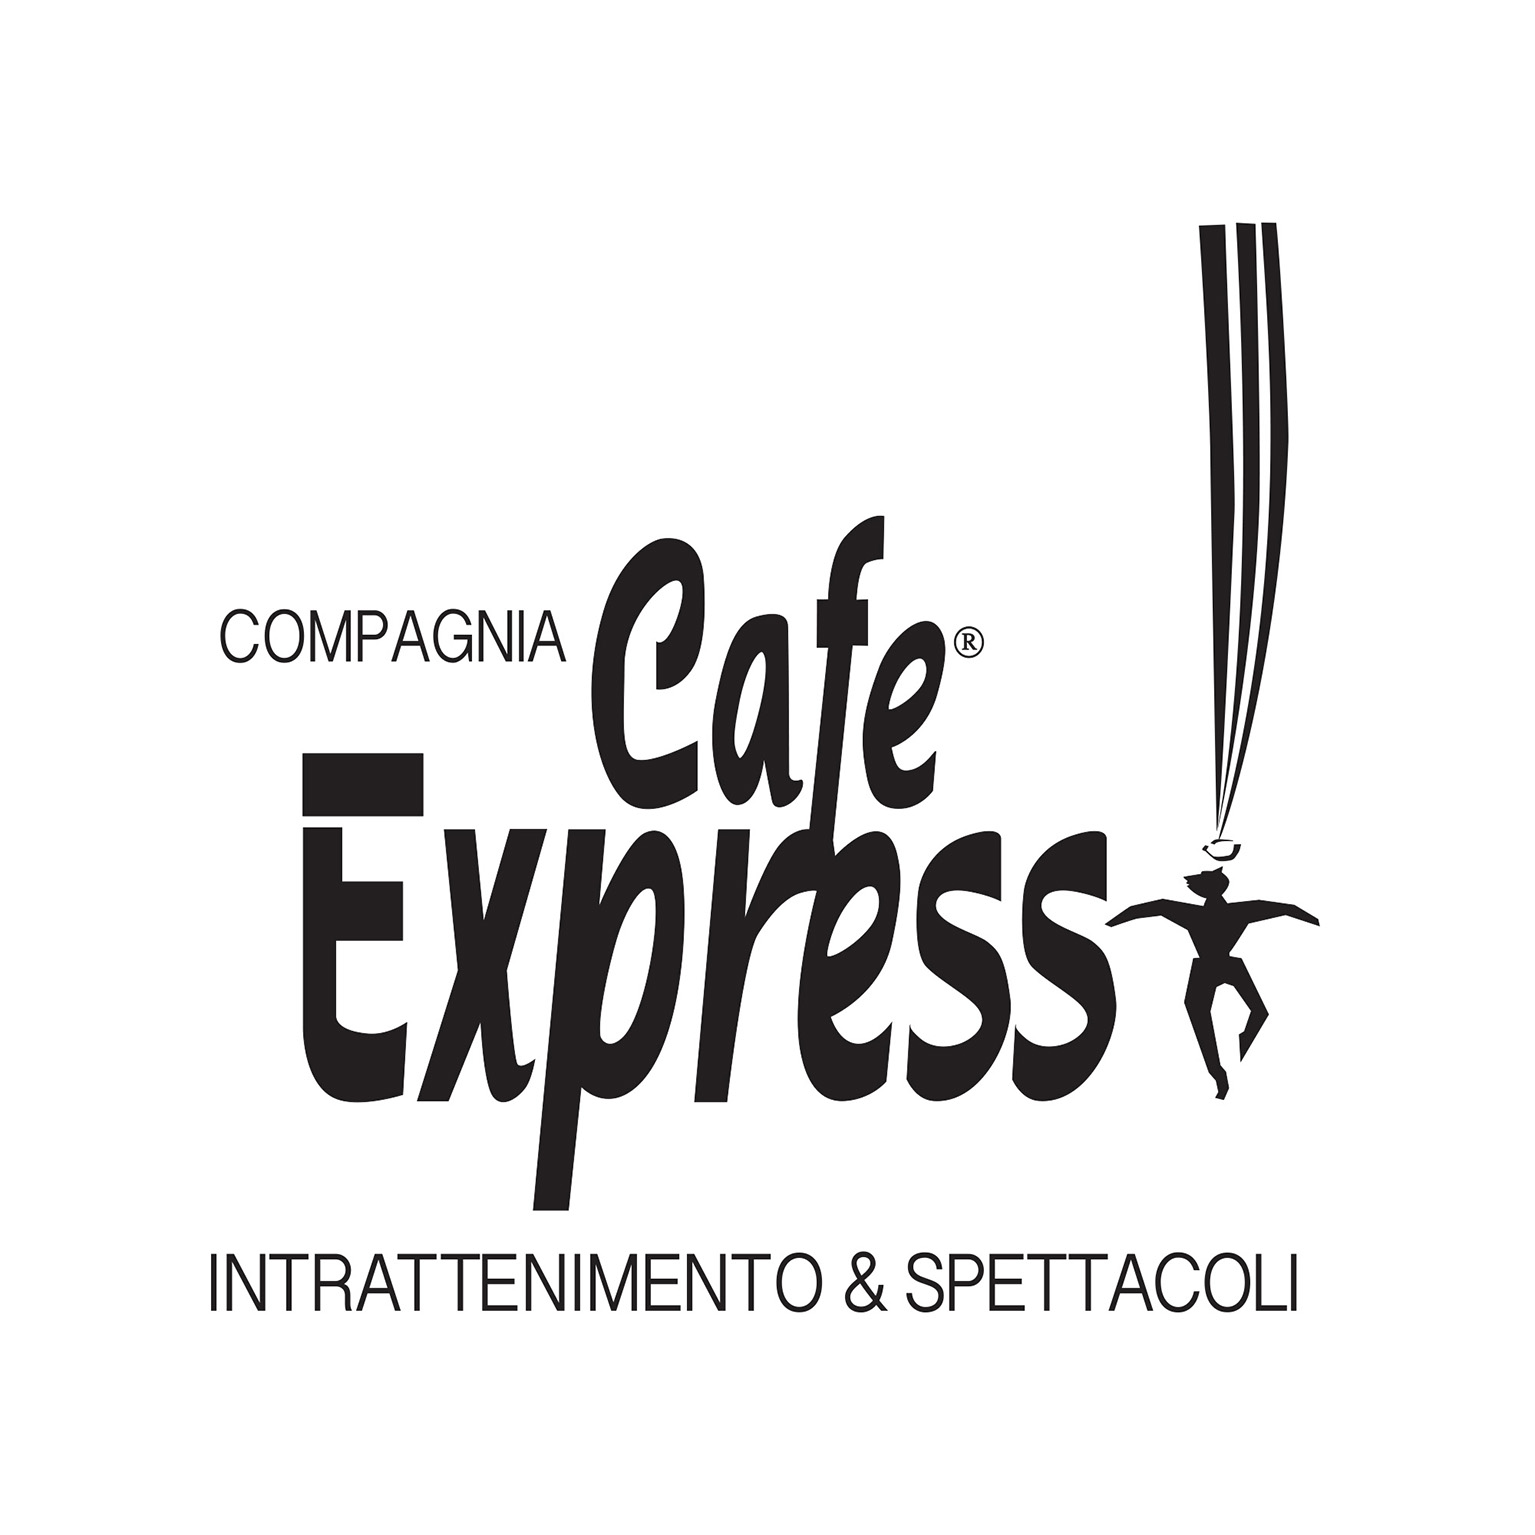 COMPAGNIA CAFE’ EXPRESS INTRATTENIMENTO E SPETTACOLI